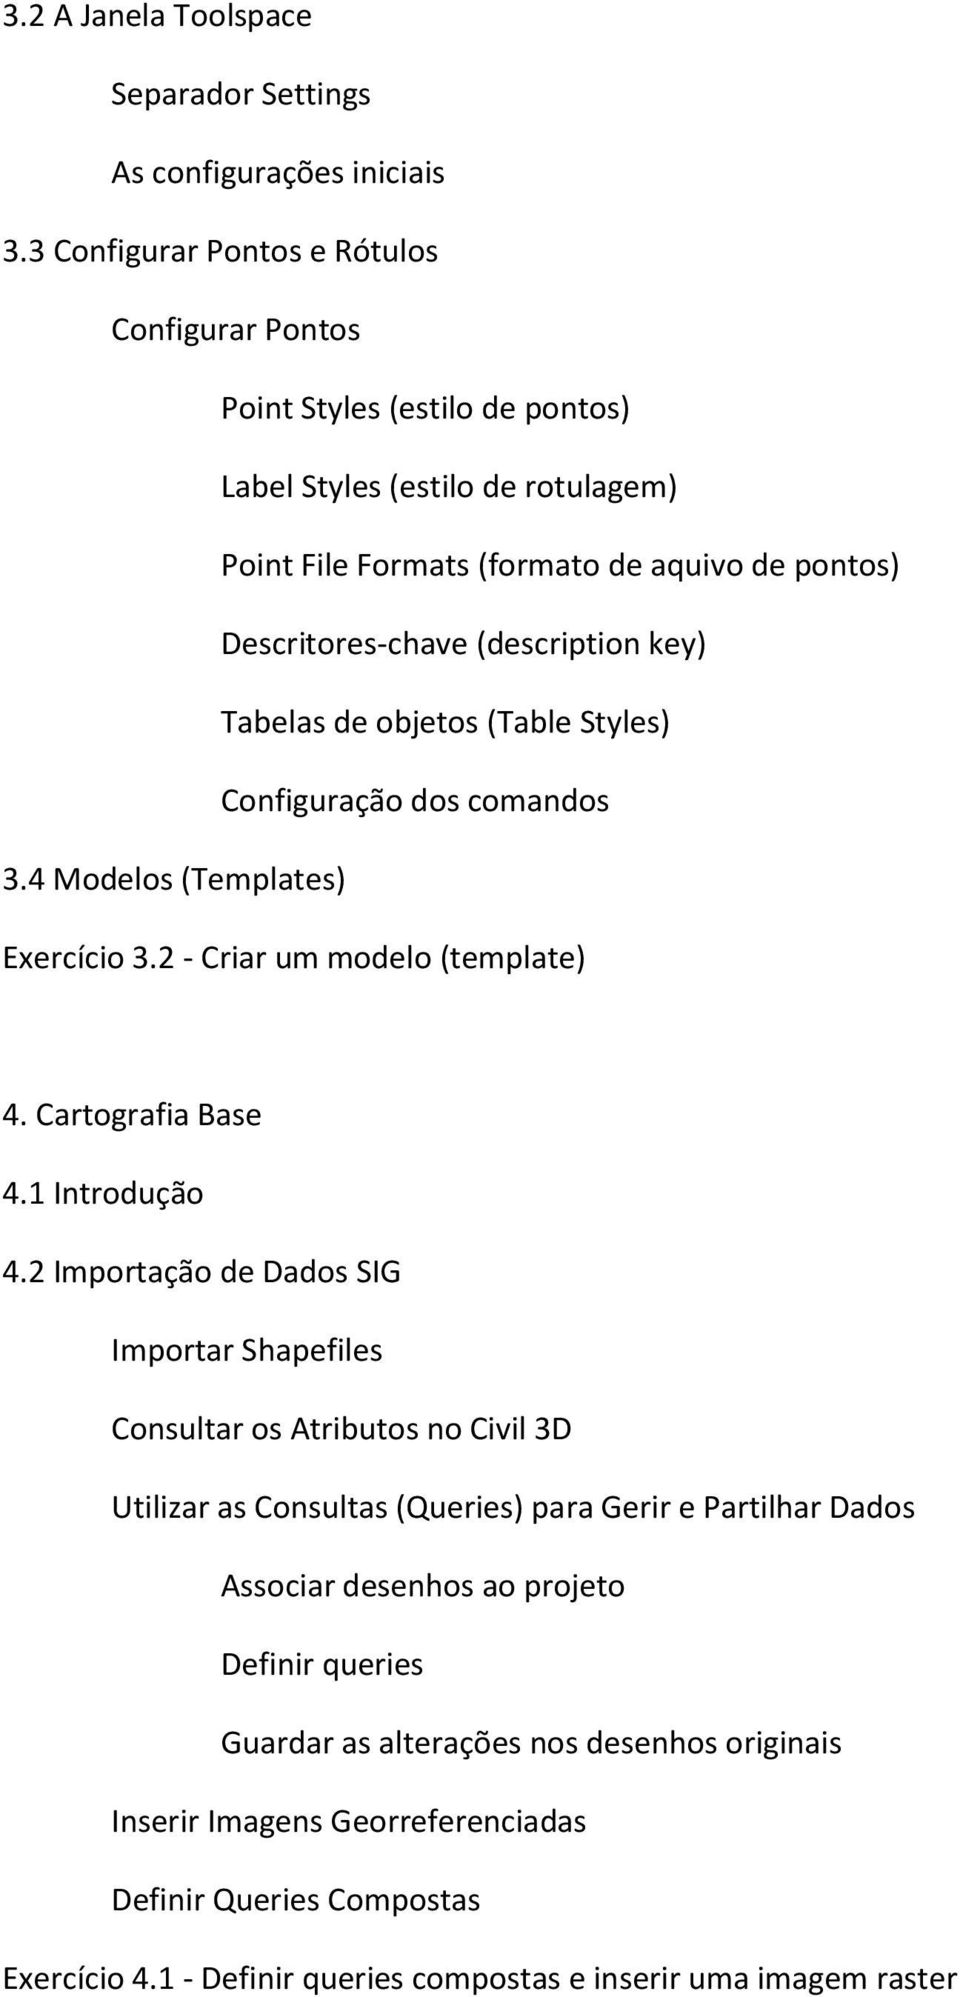 key) Tabelas de objetos (Table Styles) Configuração dos comandos 3.4 Modelos (Templates) Exercício 3.2 - Criar um modelo (template) 4. Cartografia Base 4.1 Introdução 4.